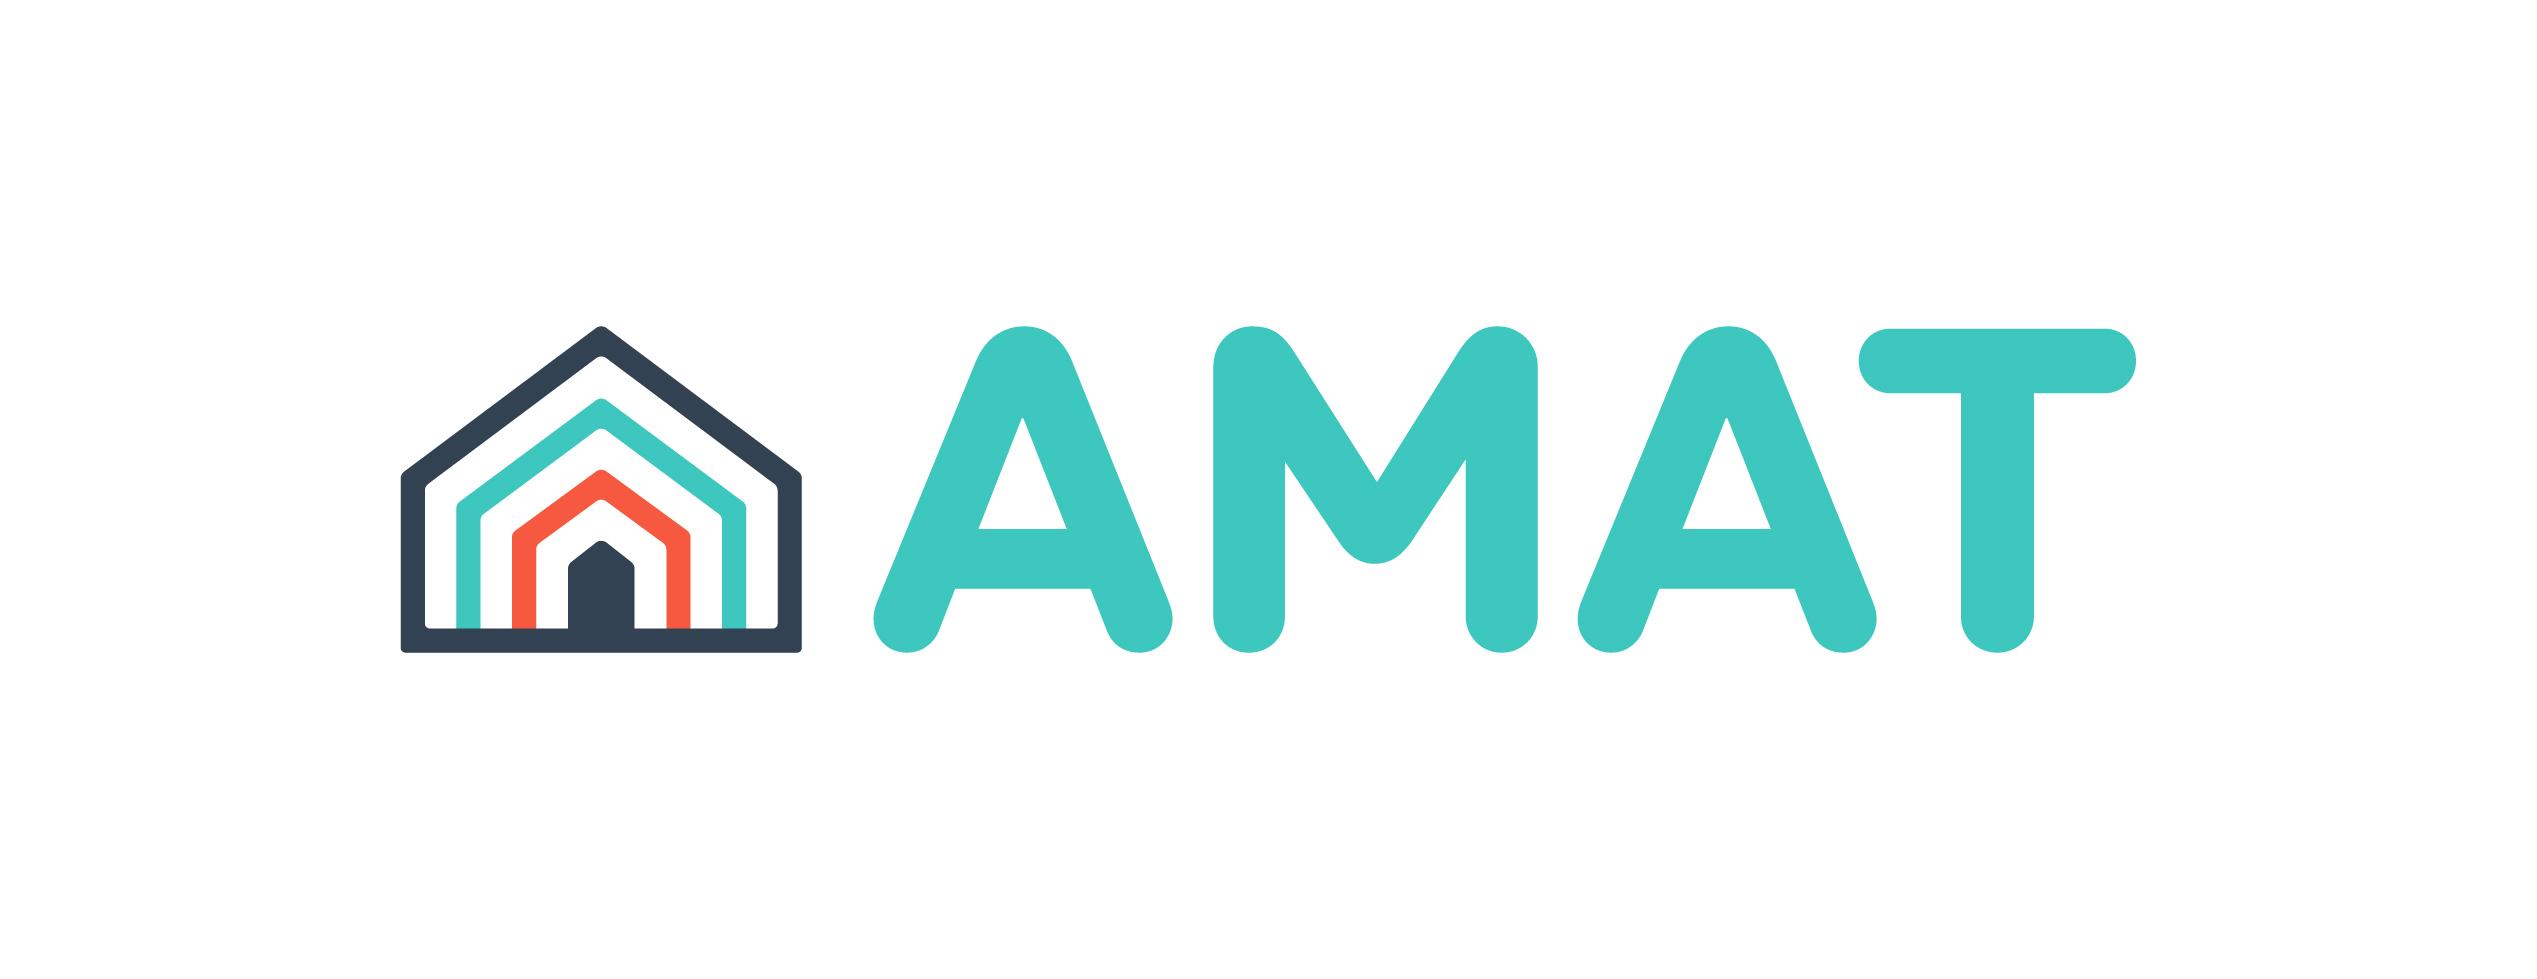 Amat Logo - AMATHome - AMAT